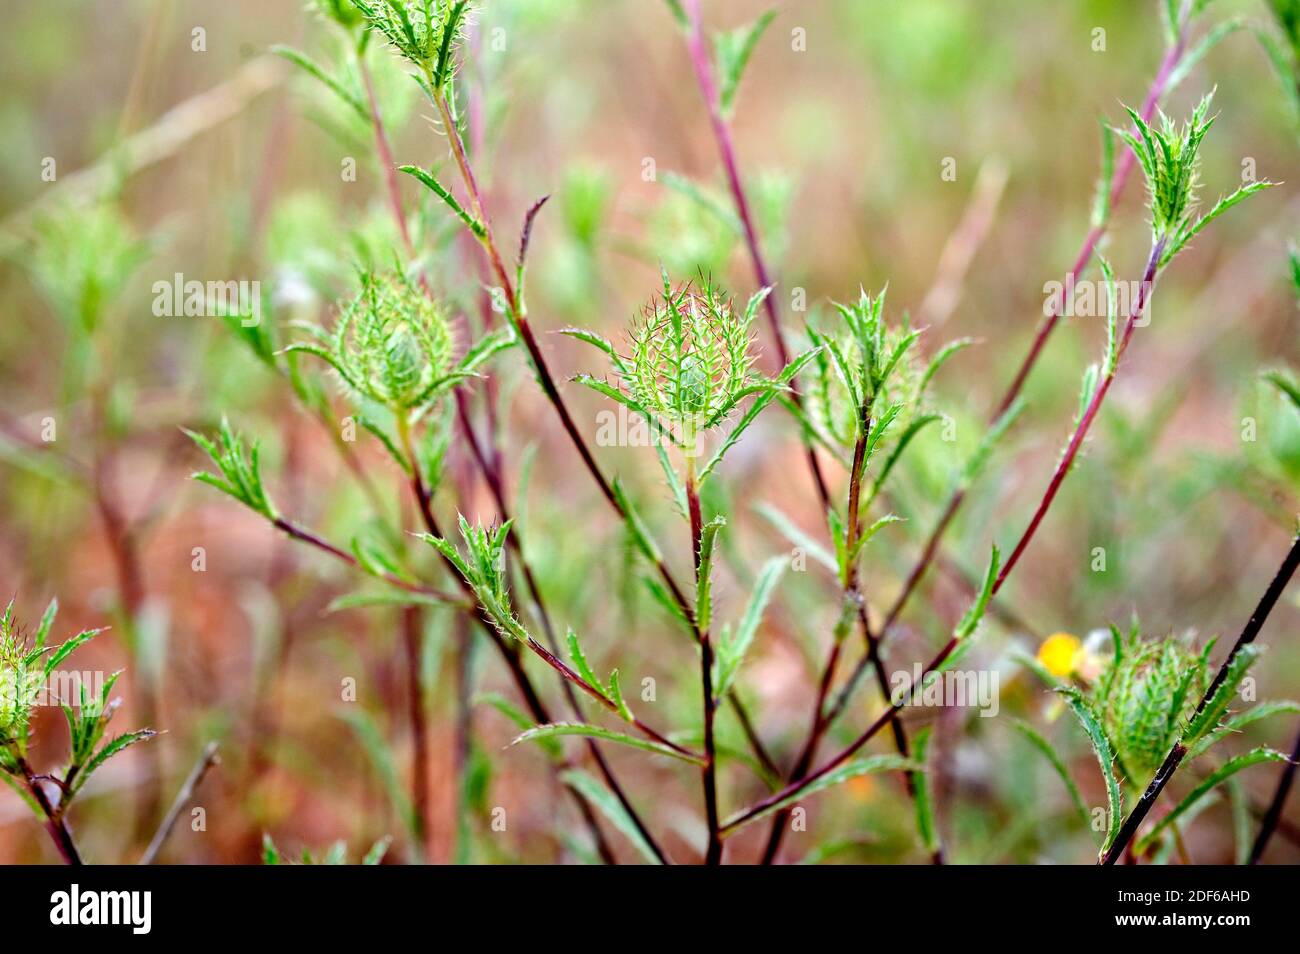 L'aractylis cancelata è un'erba annuale originaria della regione mediterranea. Angiospermi. Asteraceae. Onda, Castellon, Spagna. Foto Stock